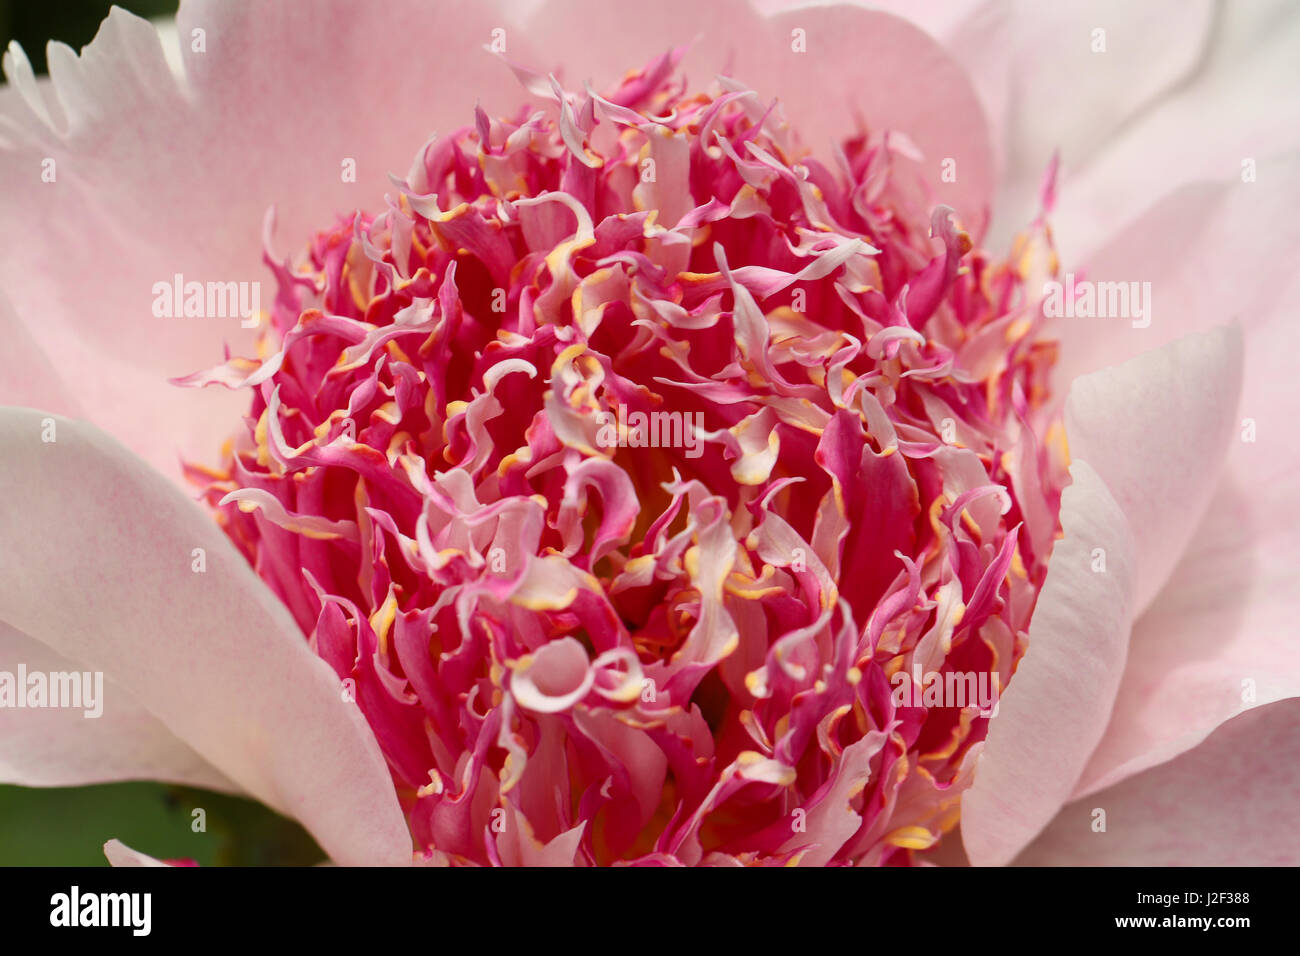 Dite peonia. Interessante e colorato di anemone come stame in rosa e bianco e la punta di giallo, sono circondati da splendidi morbidi petali di rosa. Foto Stock